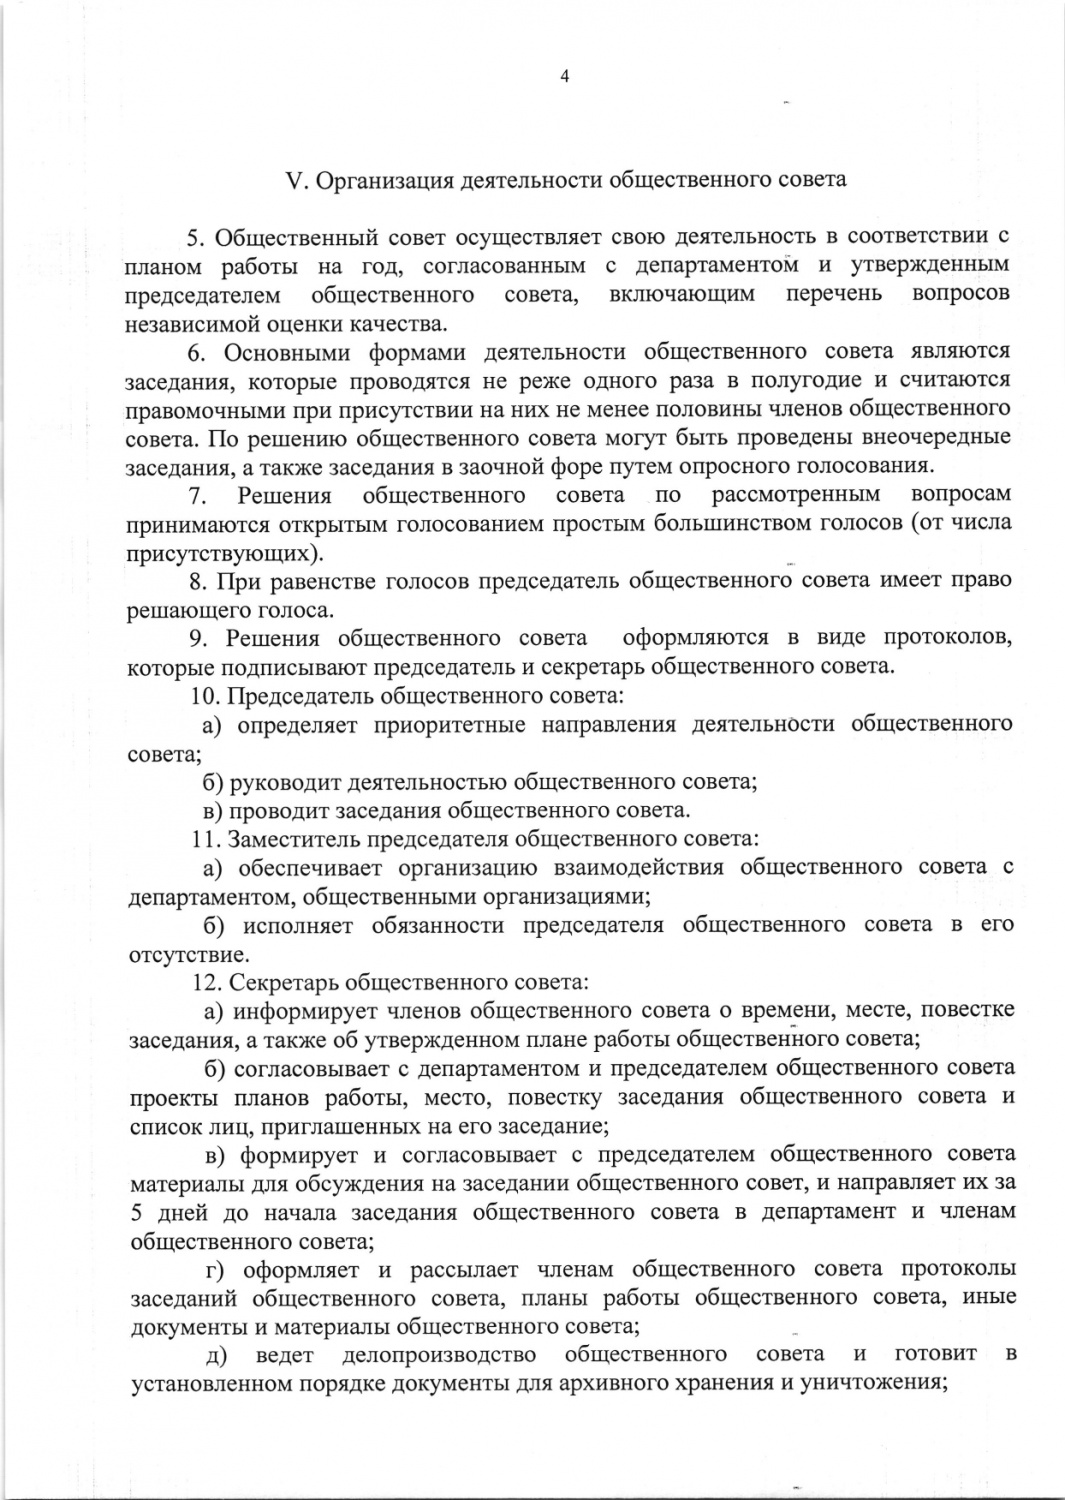 Polozhenie_ob_obshchestvennom_sovete (1)_page-0004.jpg